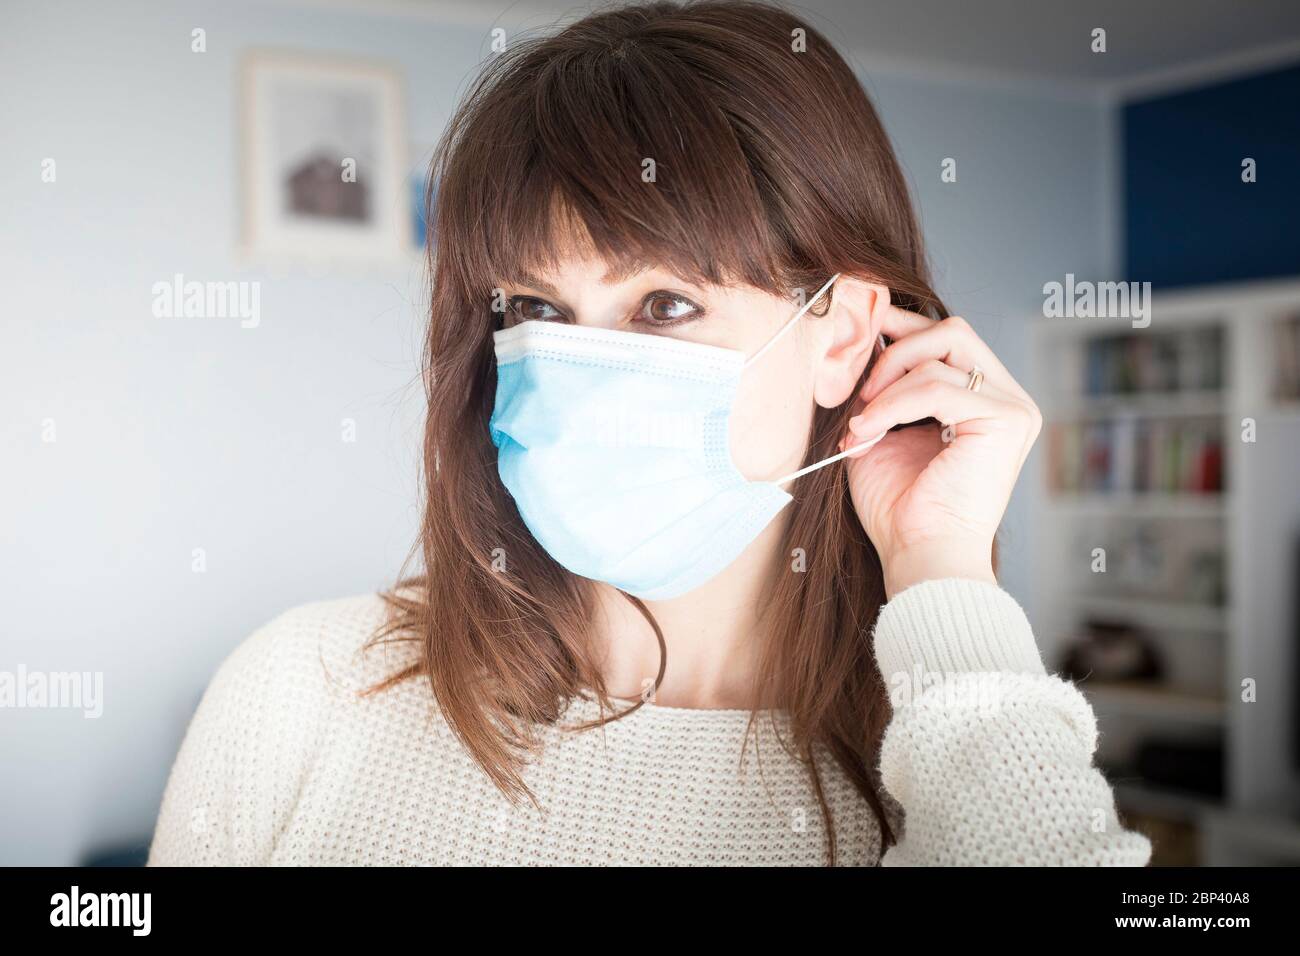 Caucasienne femme attirante avec de longs cheveux et des langes, mettant sur un masque chirurgical bleu pendant la pandémie de covid-19 ou de coronavirus. Banque D'Images